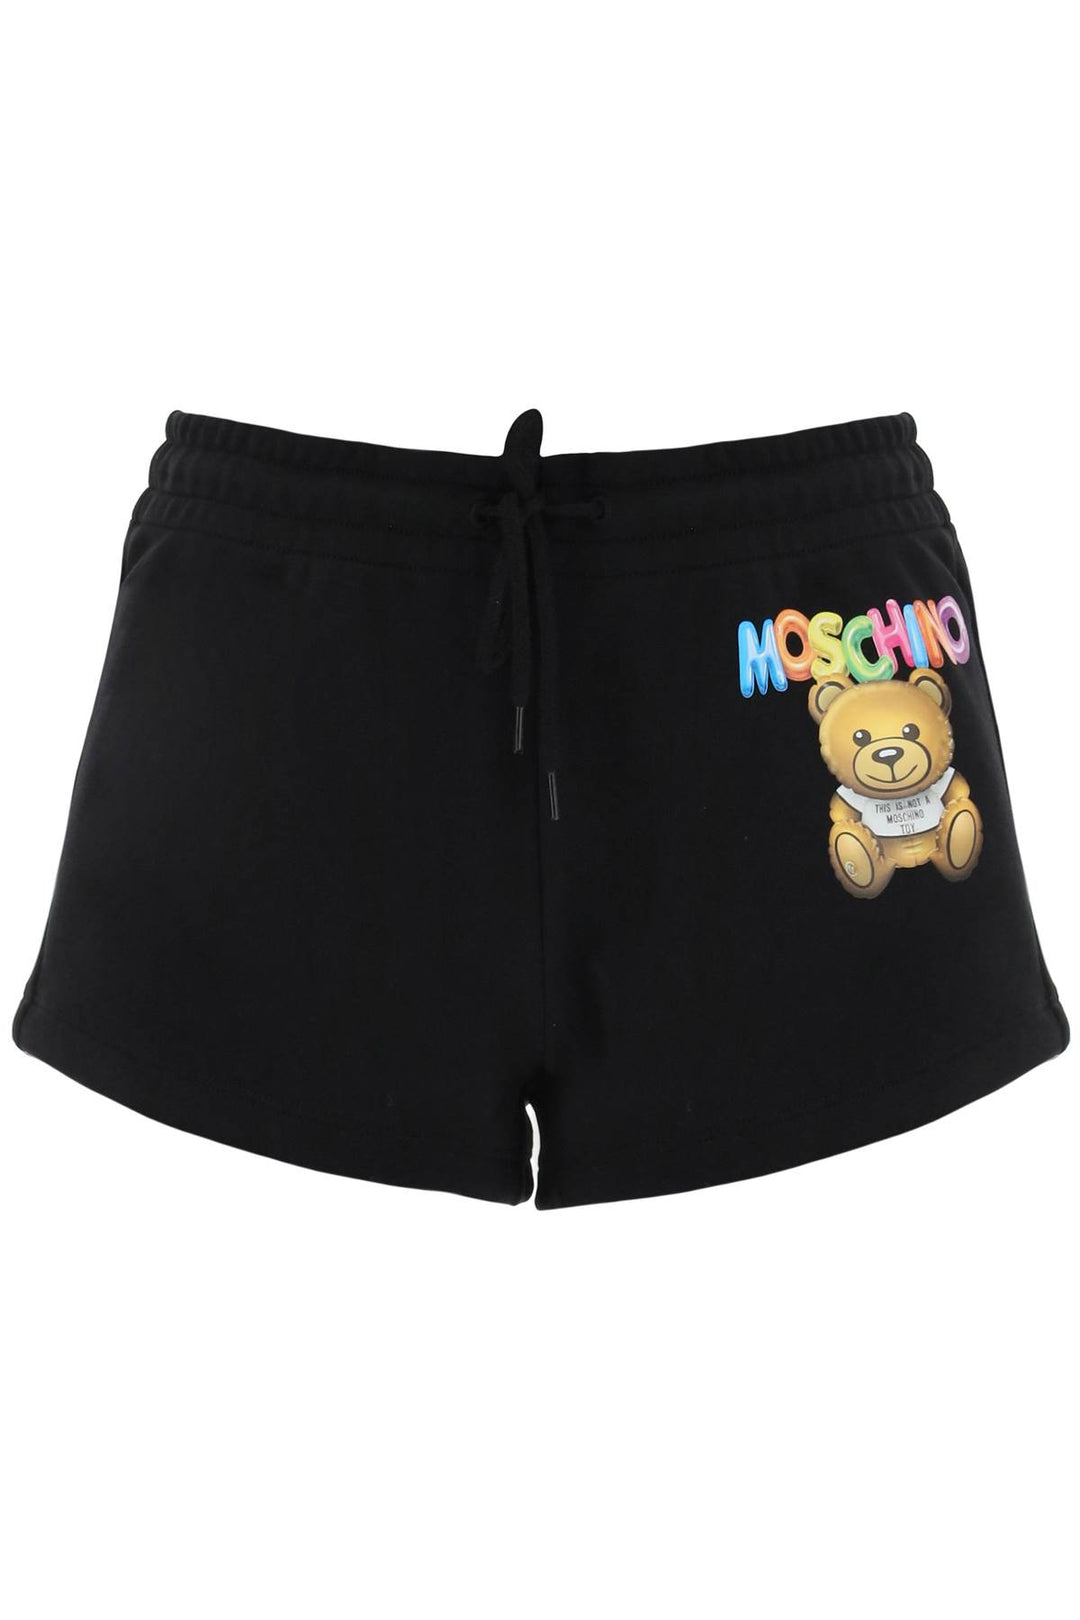 Moschino Logo Printed Shorts   Nero